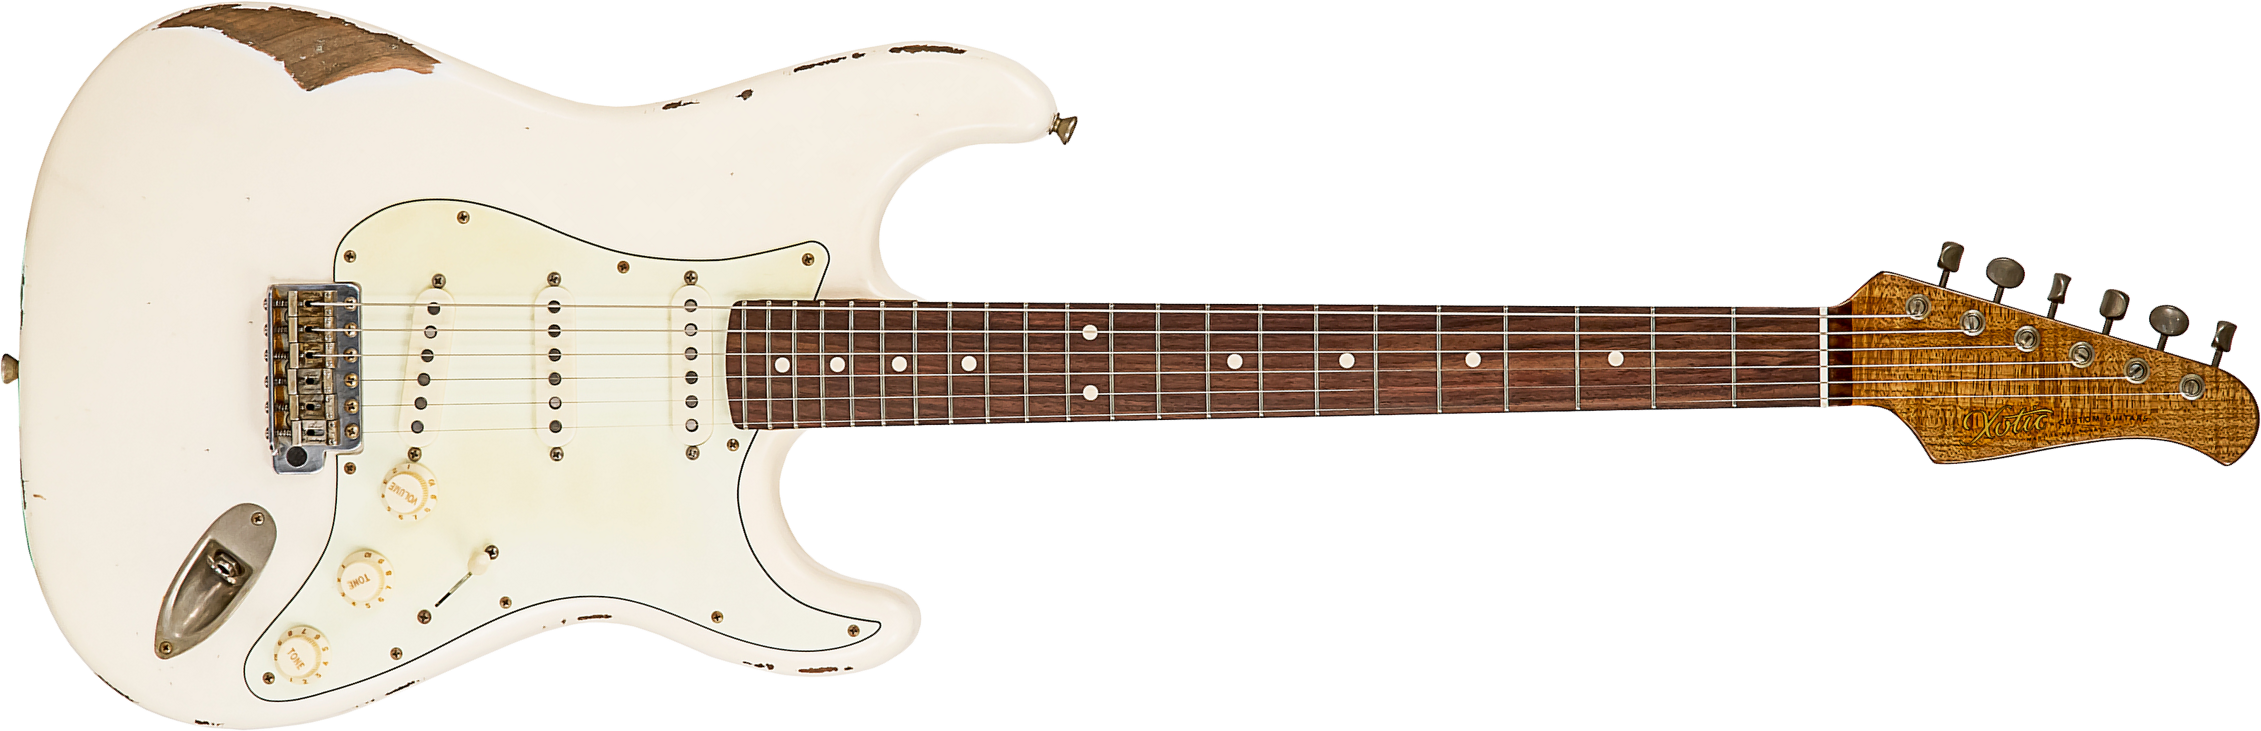 Xotic Xsc-1 Alder California Class 3s Rw #1624r - Heavy Aging Vintage White - E-Gitarre in Str-Form - Main picture